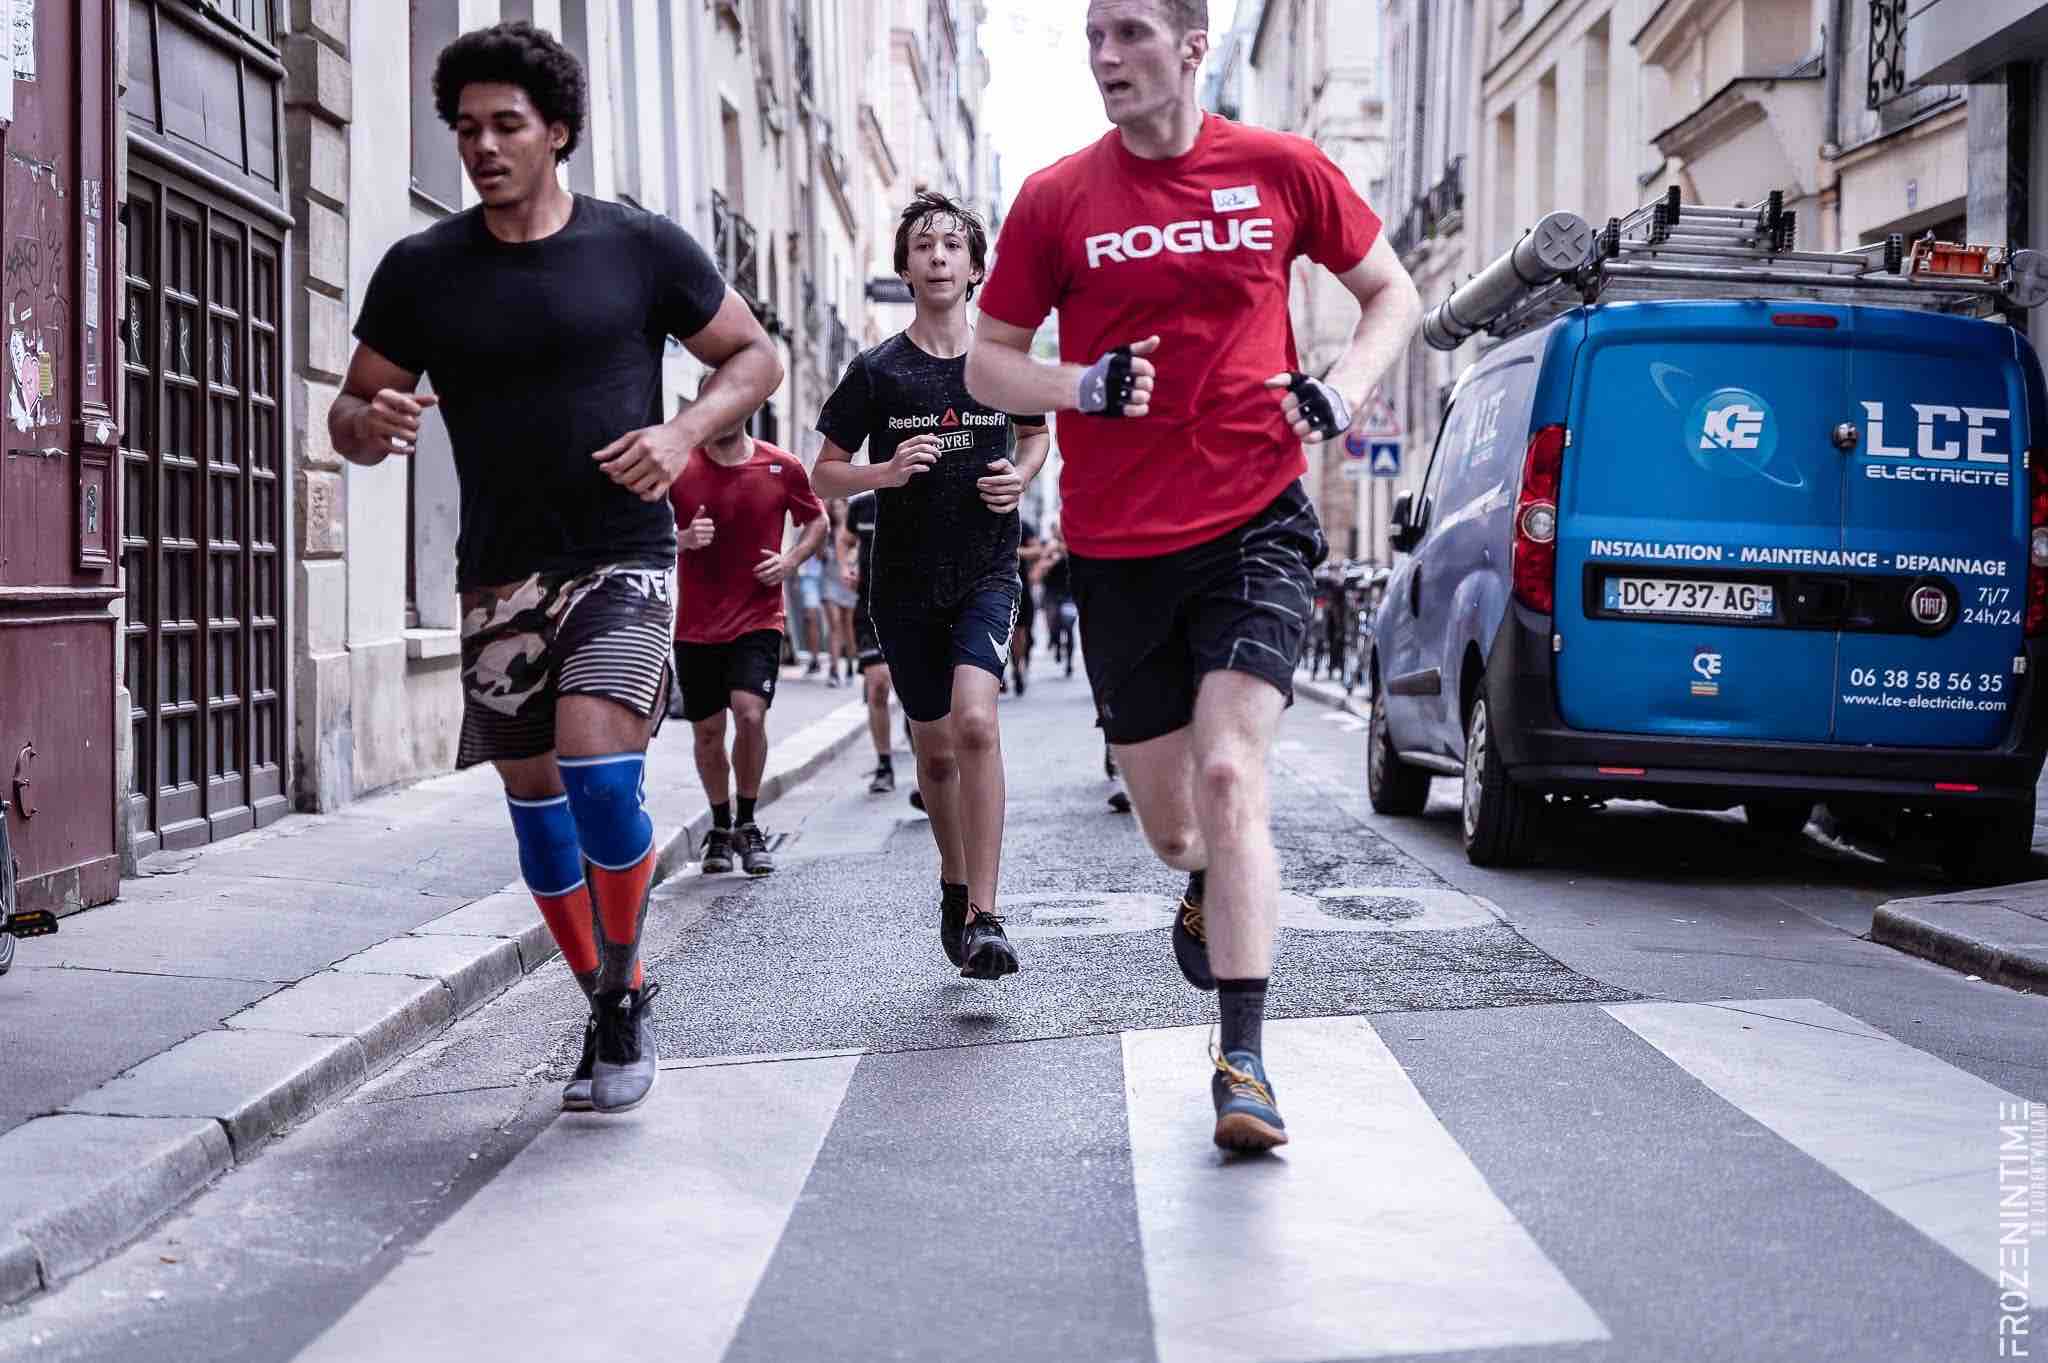 CrossFit Louvre dans Paris - Réserver votre séance au 📞 09.62.52.37.66